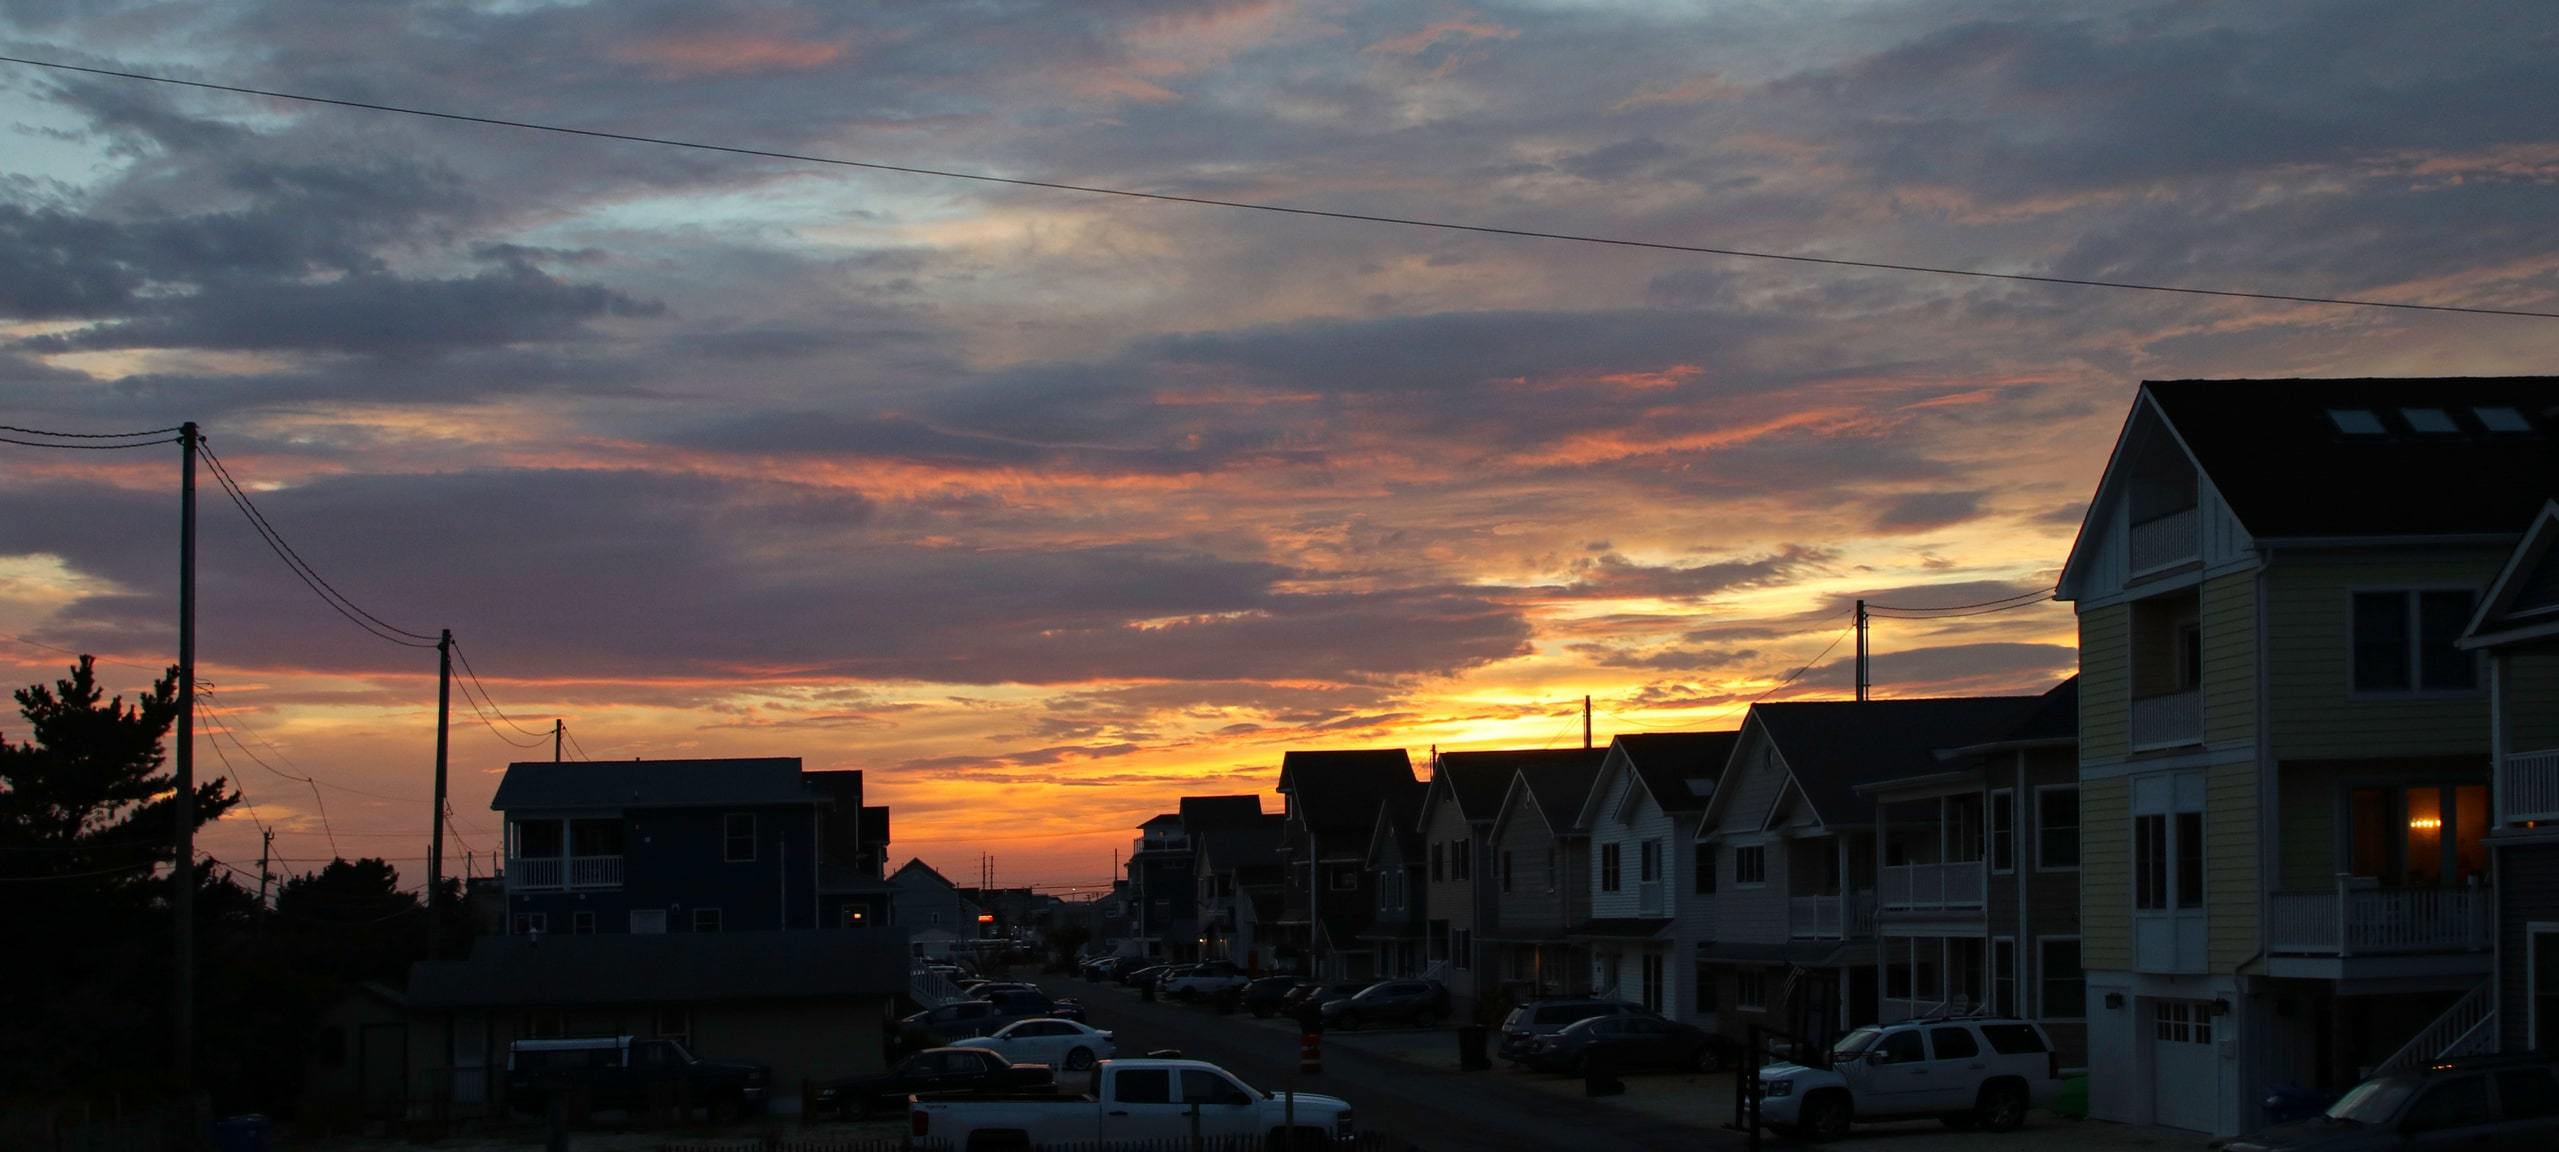 Sunset over residential neighborhood outside of Shrewsbury Township, NJ